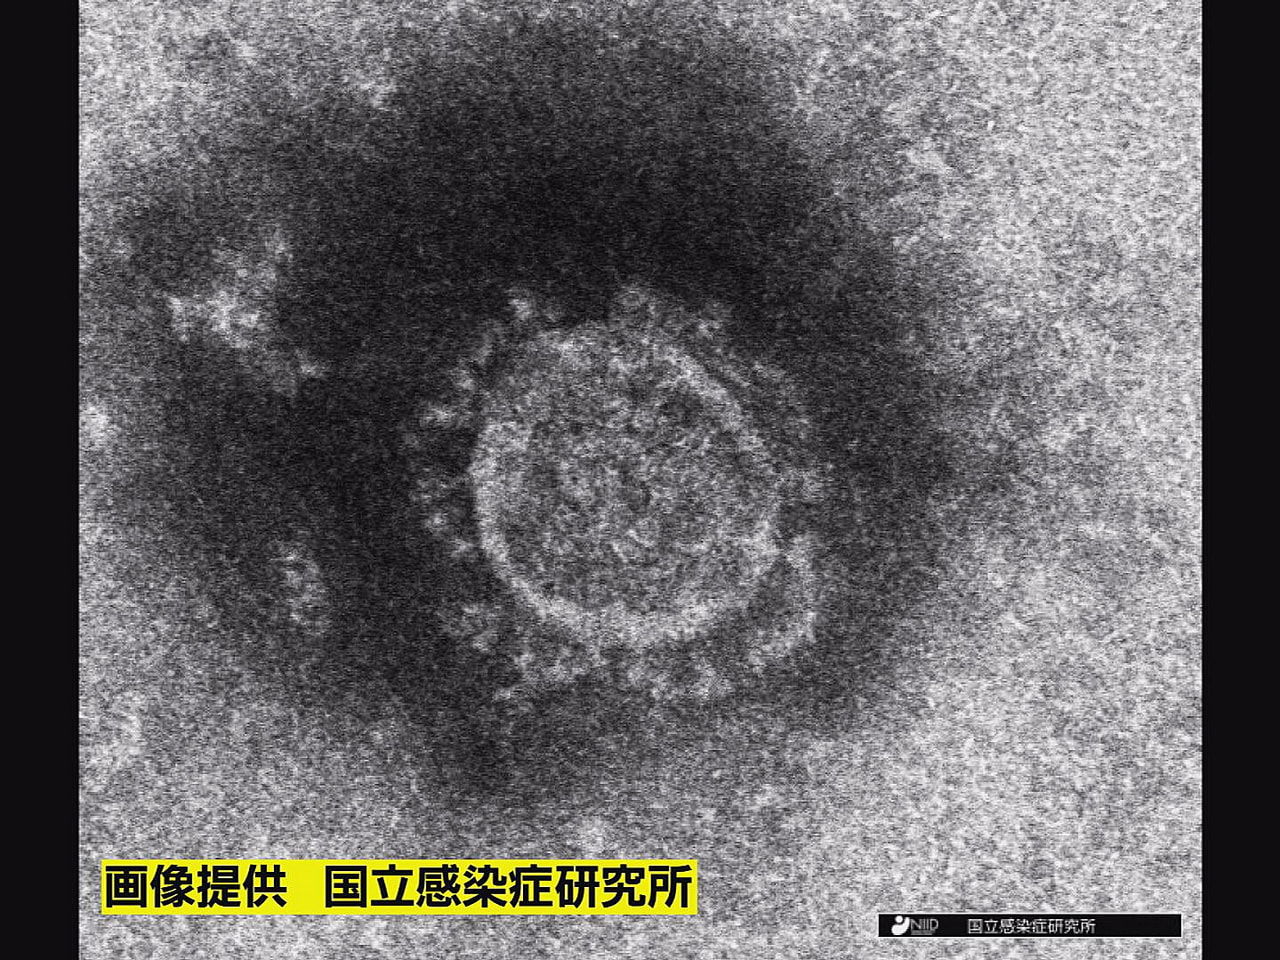 岐阜県は２６日、新型コロナウイルスの新規感染者が５２０人確認されたと発表しました...